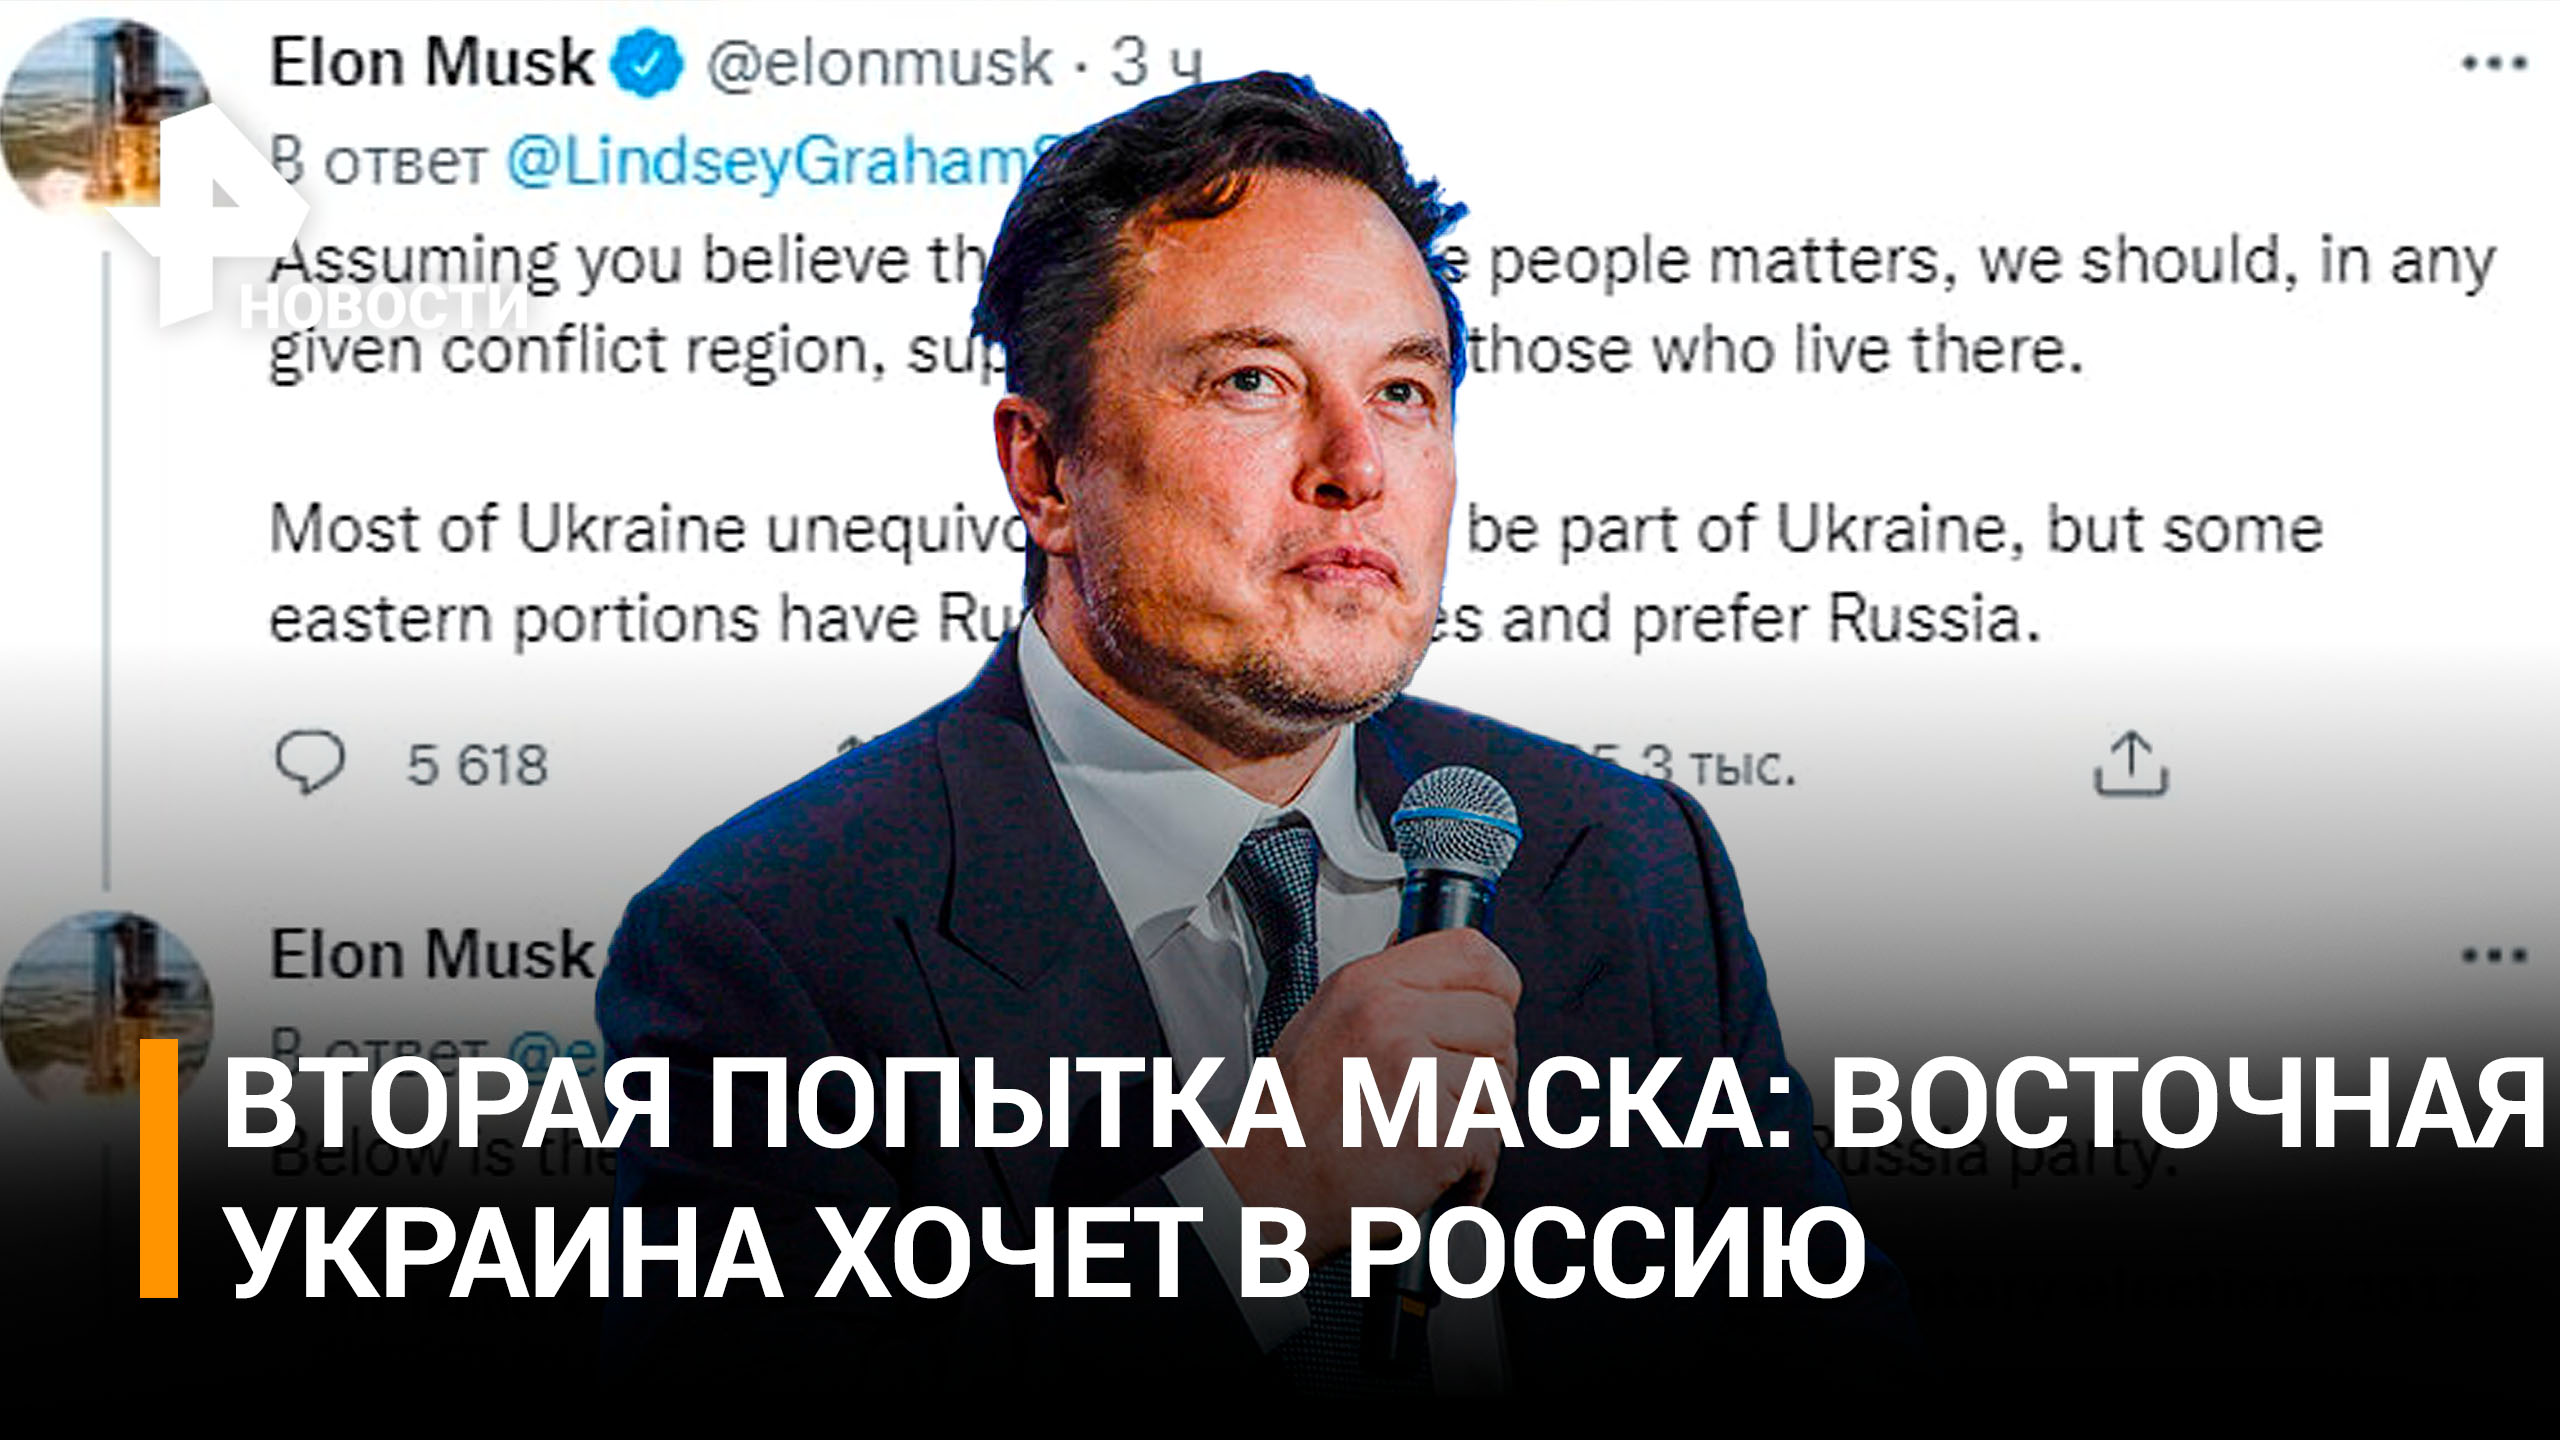 Илон Маск: "Жители восточной Украины предпочитают Россию" / РЕН Новости